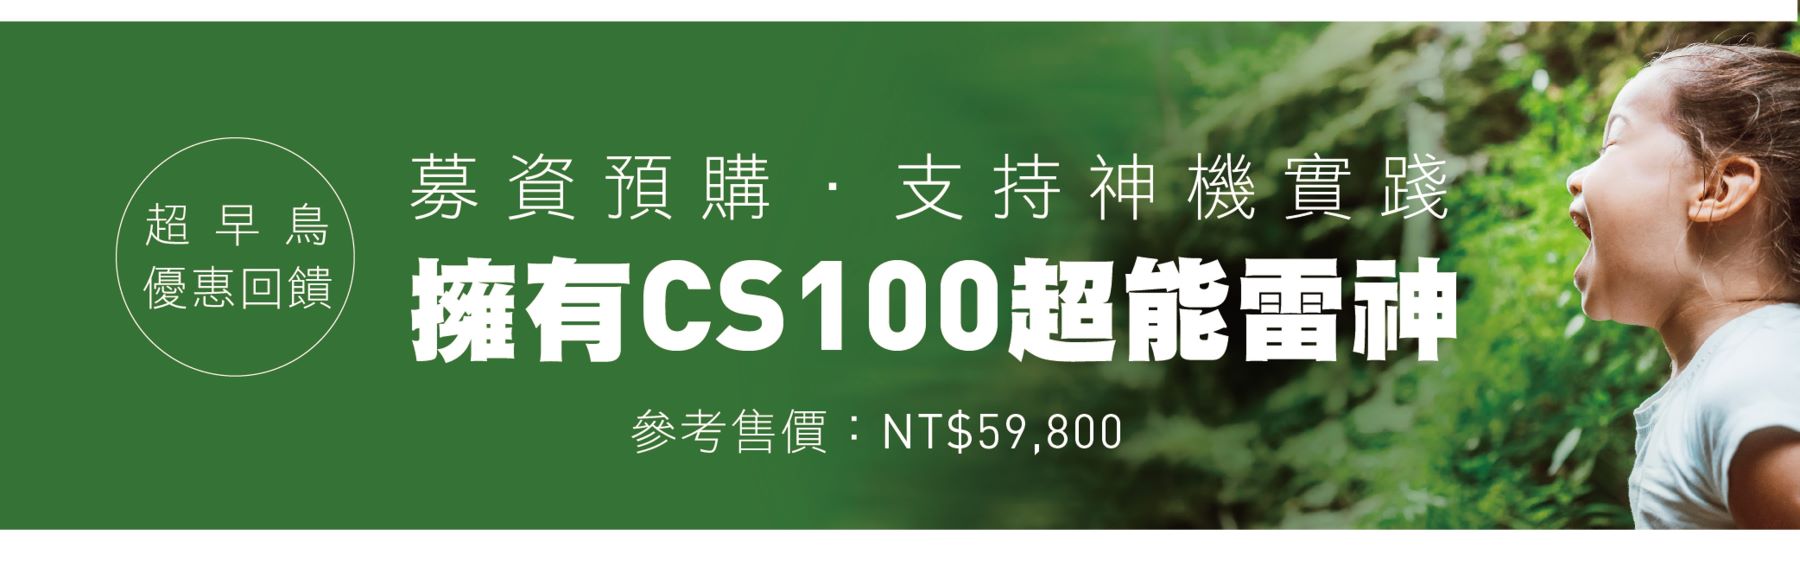 CS100產品介紹1000-15b